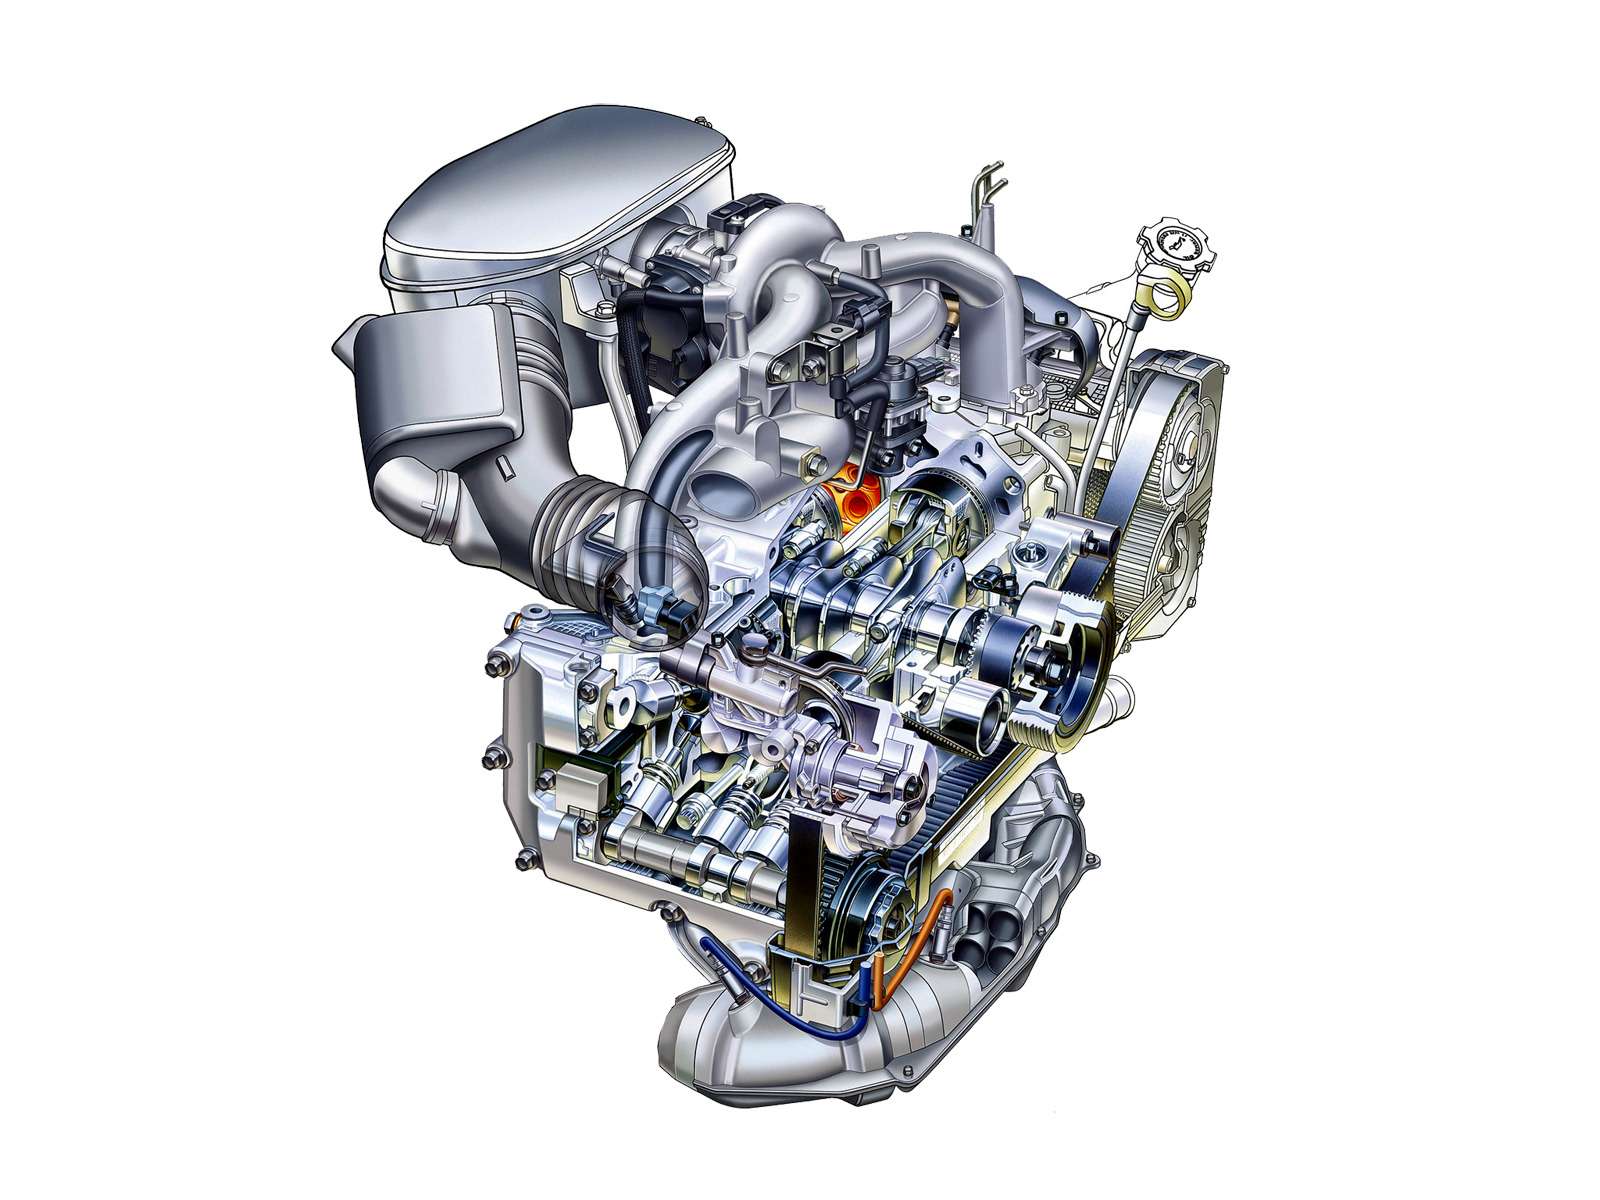 Рейтинг надежности двигателей автомобилей: два литра проблем - фото 590351 